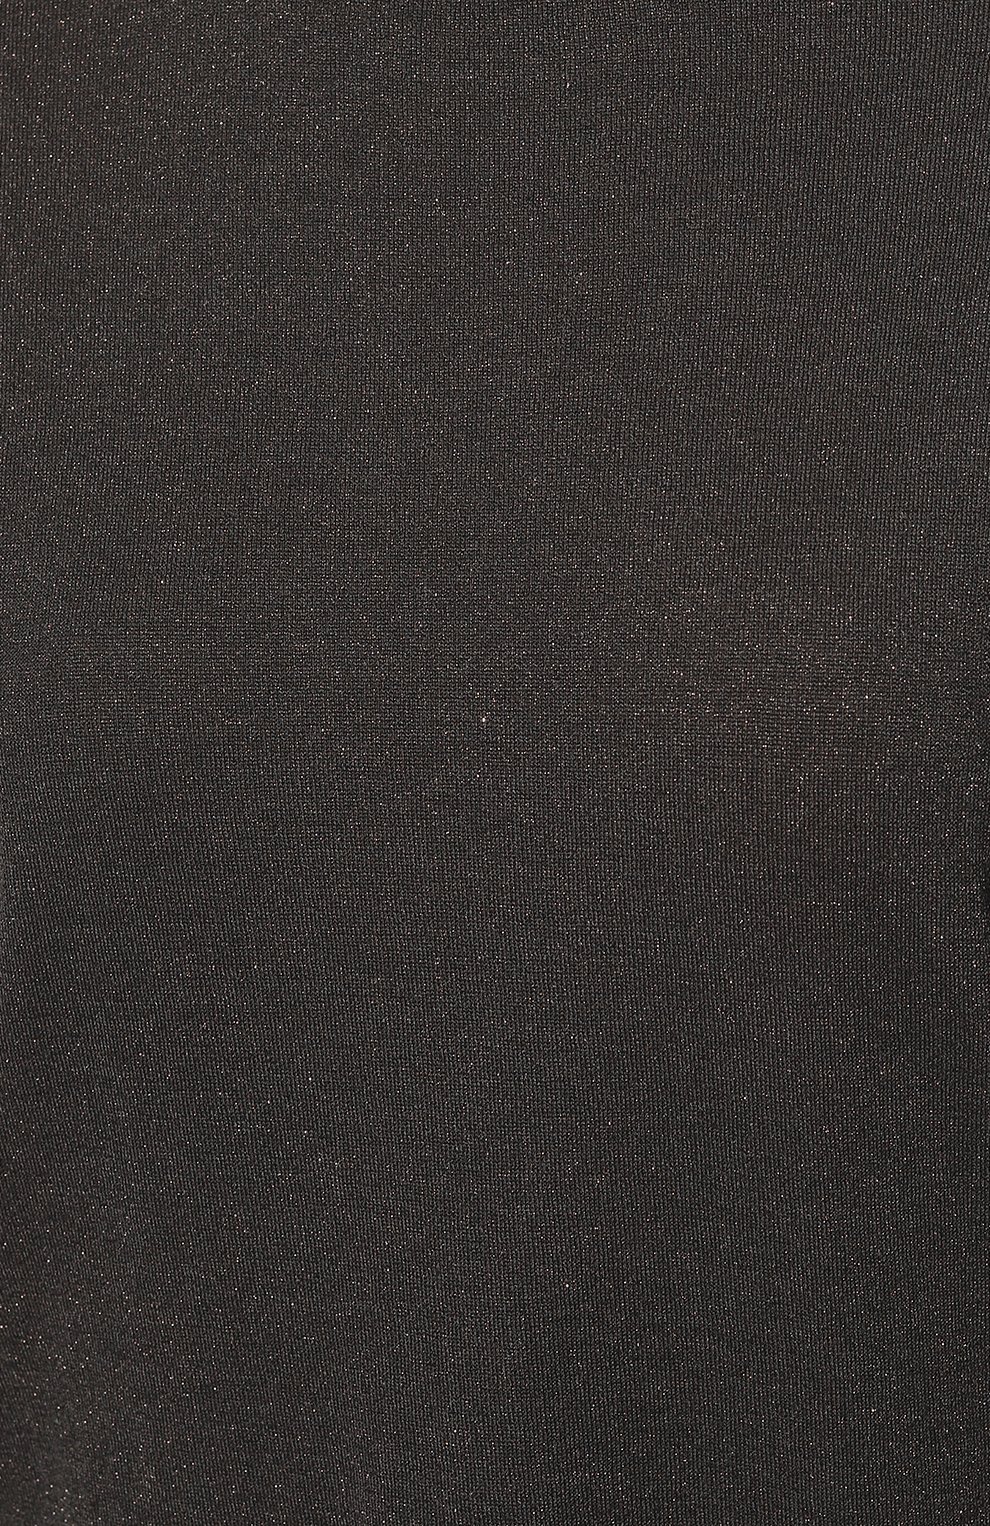 Женский топ из кашемира и шелка BRUNELLO CUCINELLI темно-серого цвета, арт. M41810000 | Фото 5 (Материал внешний: Шерсть, Кашемир; Рукава: Короткие; Длина (для топов): Стандартные; Стили: Кэжуэл)